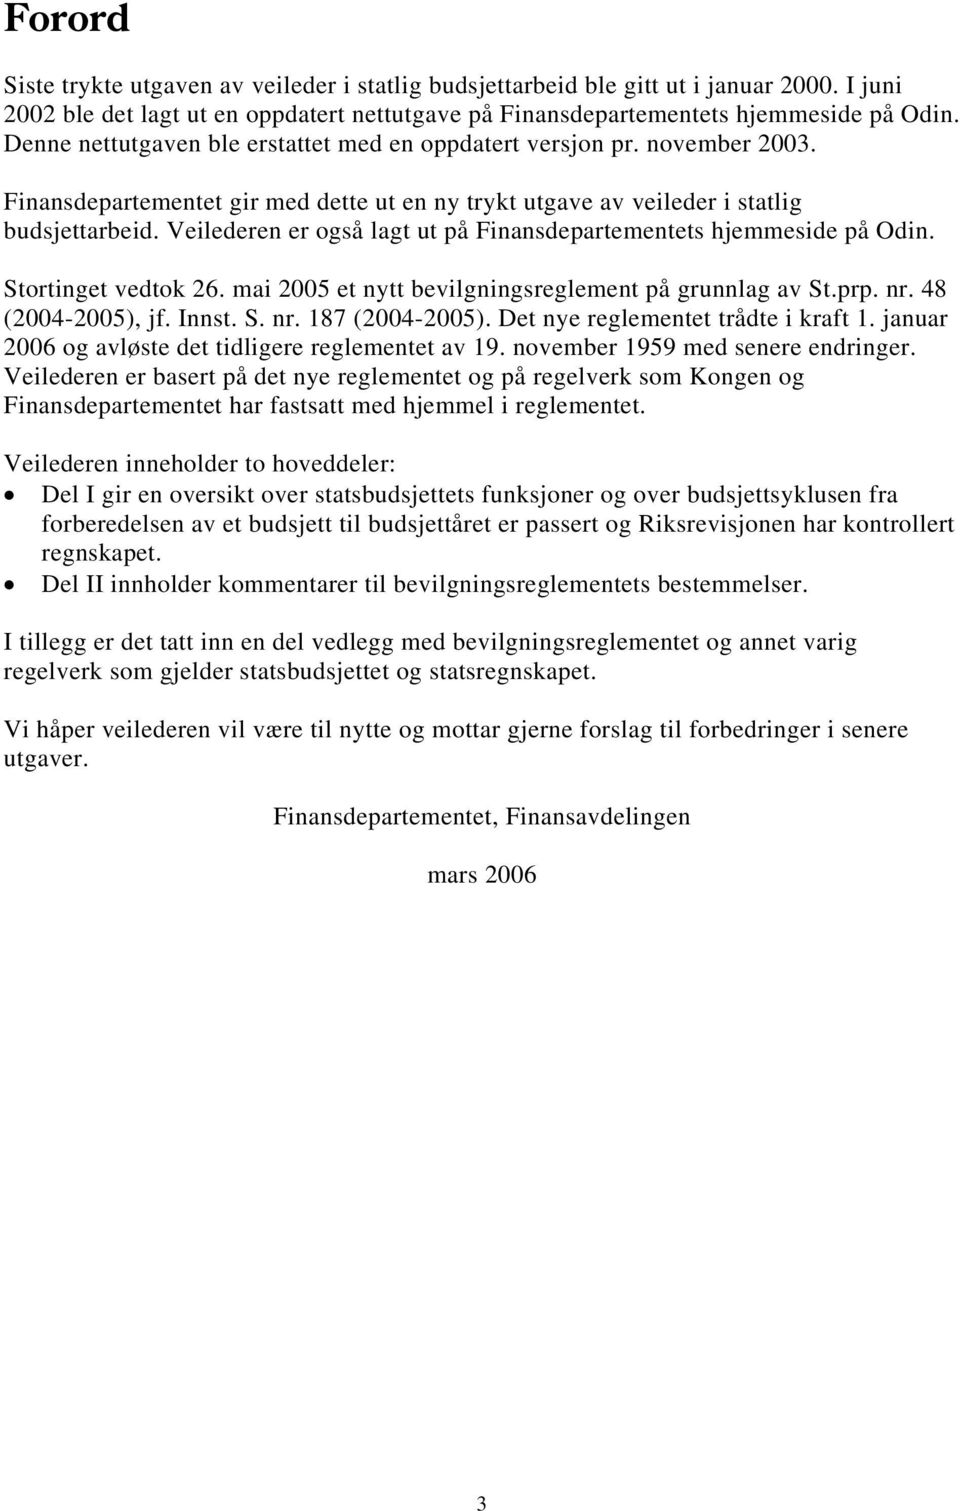 Veilederen er også lagt ut på Finansdepartementets hjemmeside på Odin. Stortinget vedtok 26. mai 2005 et nytt bevilgningsreglement på grunnlag av St.prp. nr. 48 (2004-2005), jf. Innst. S. nr. 187 (2004-2005).